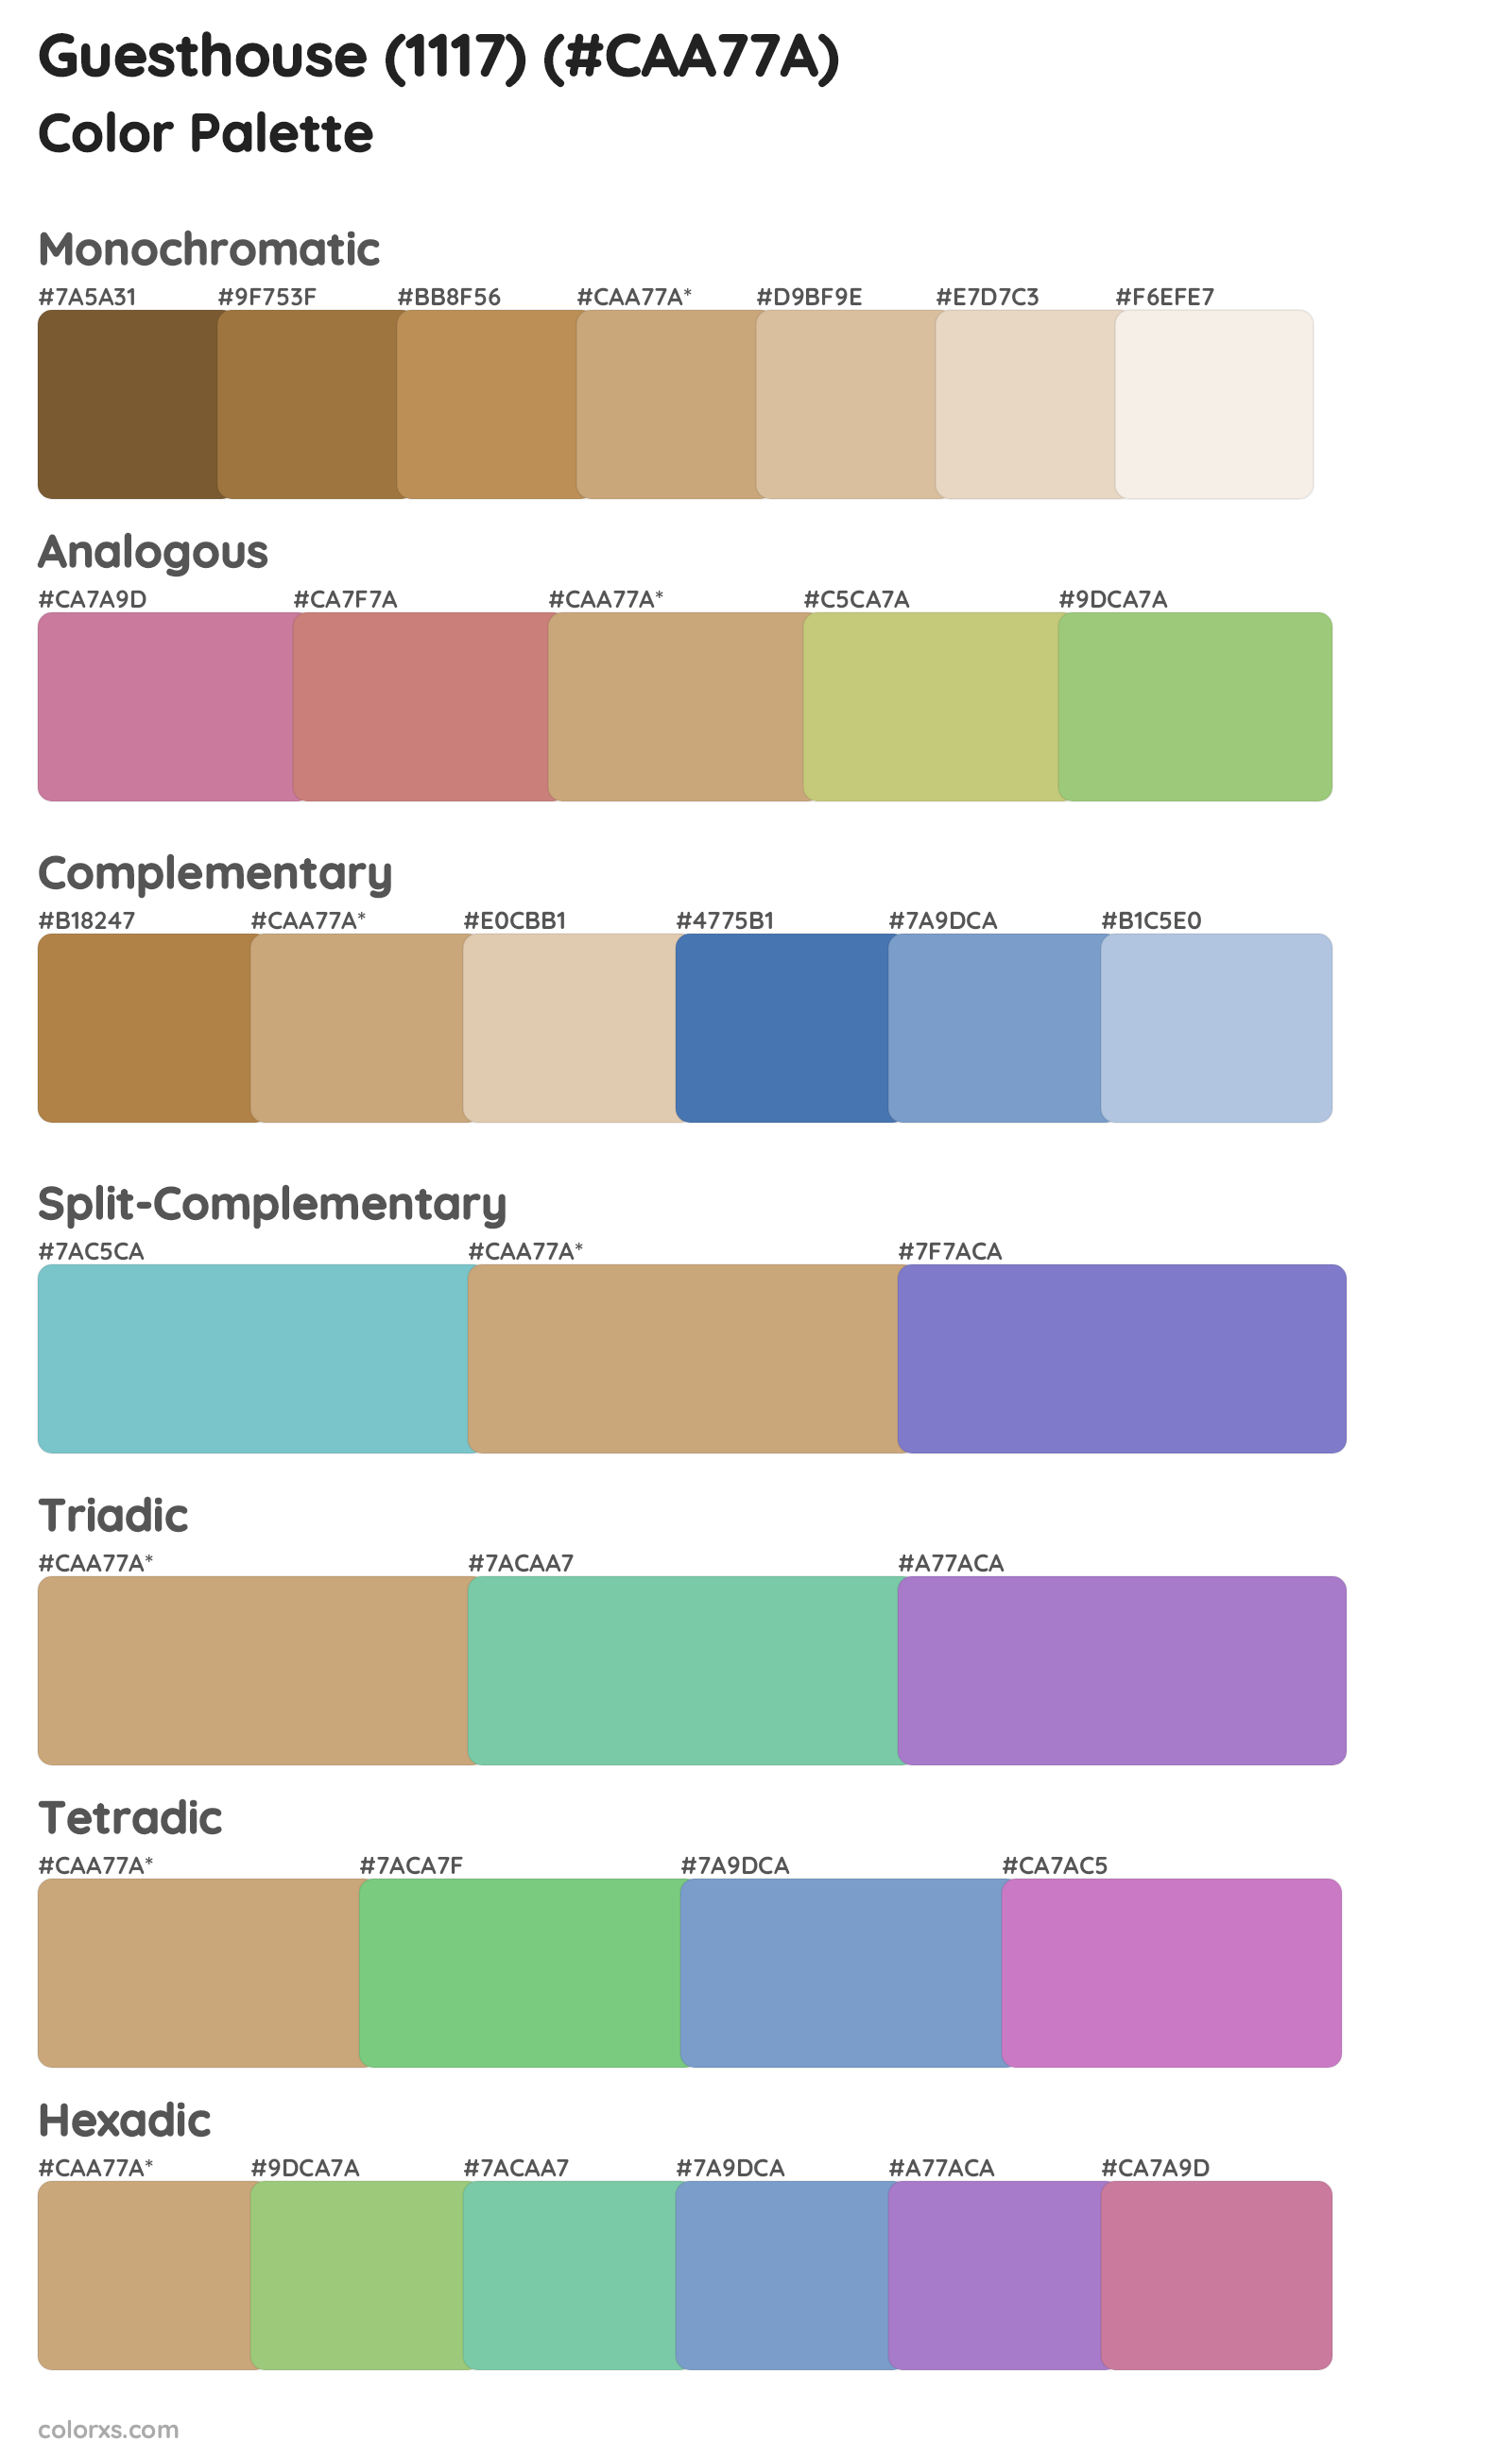 Guesthouse (1117) Color Scheme Palettes